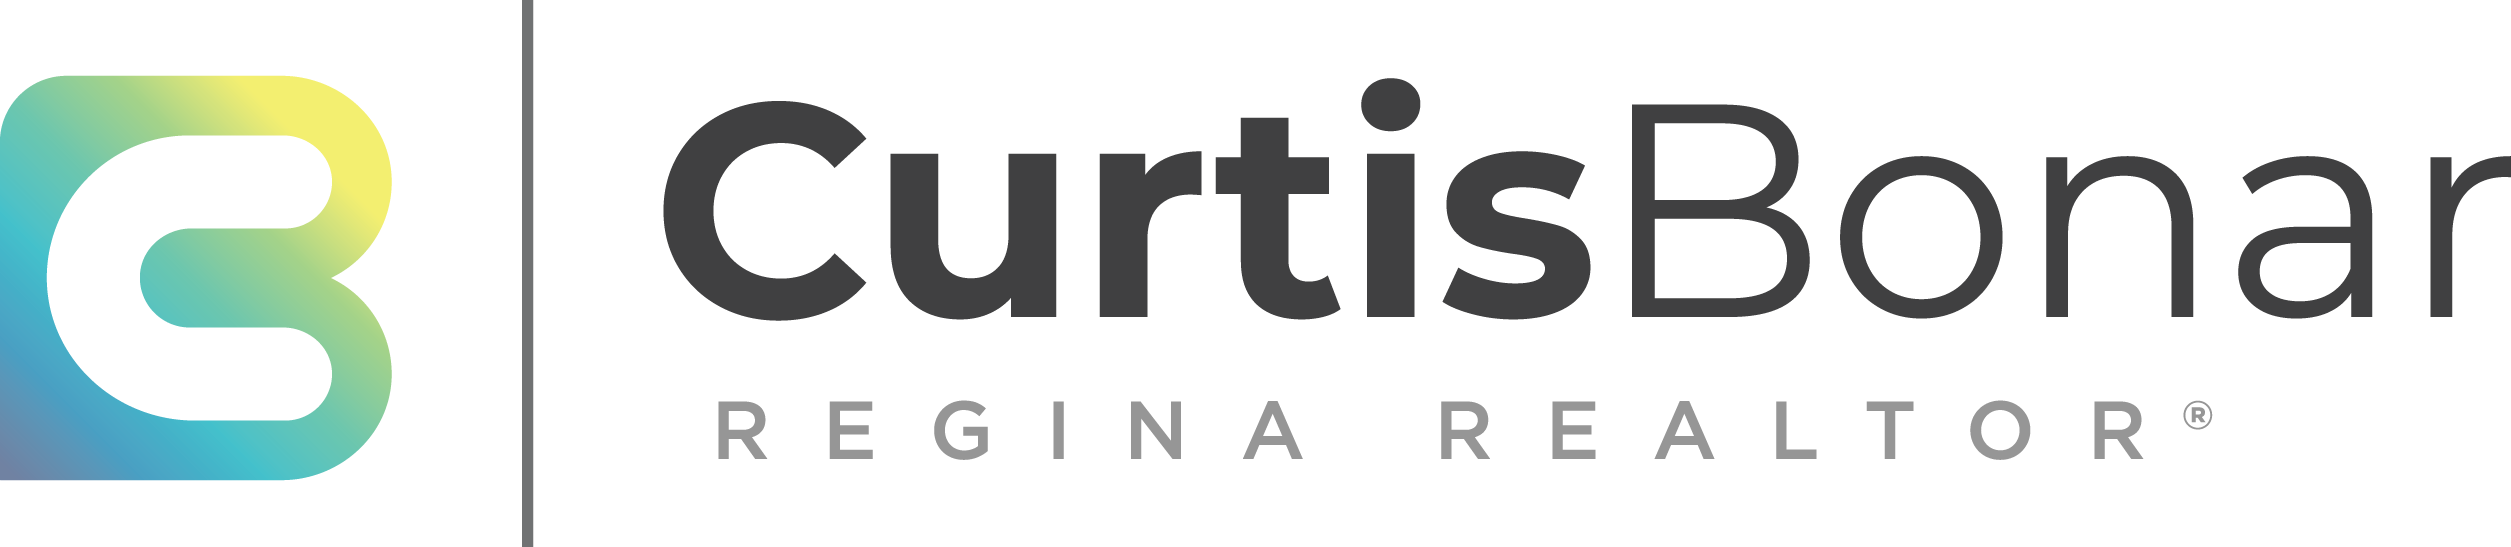 Curtis Bonar Logo LARGE